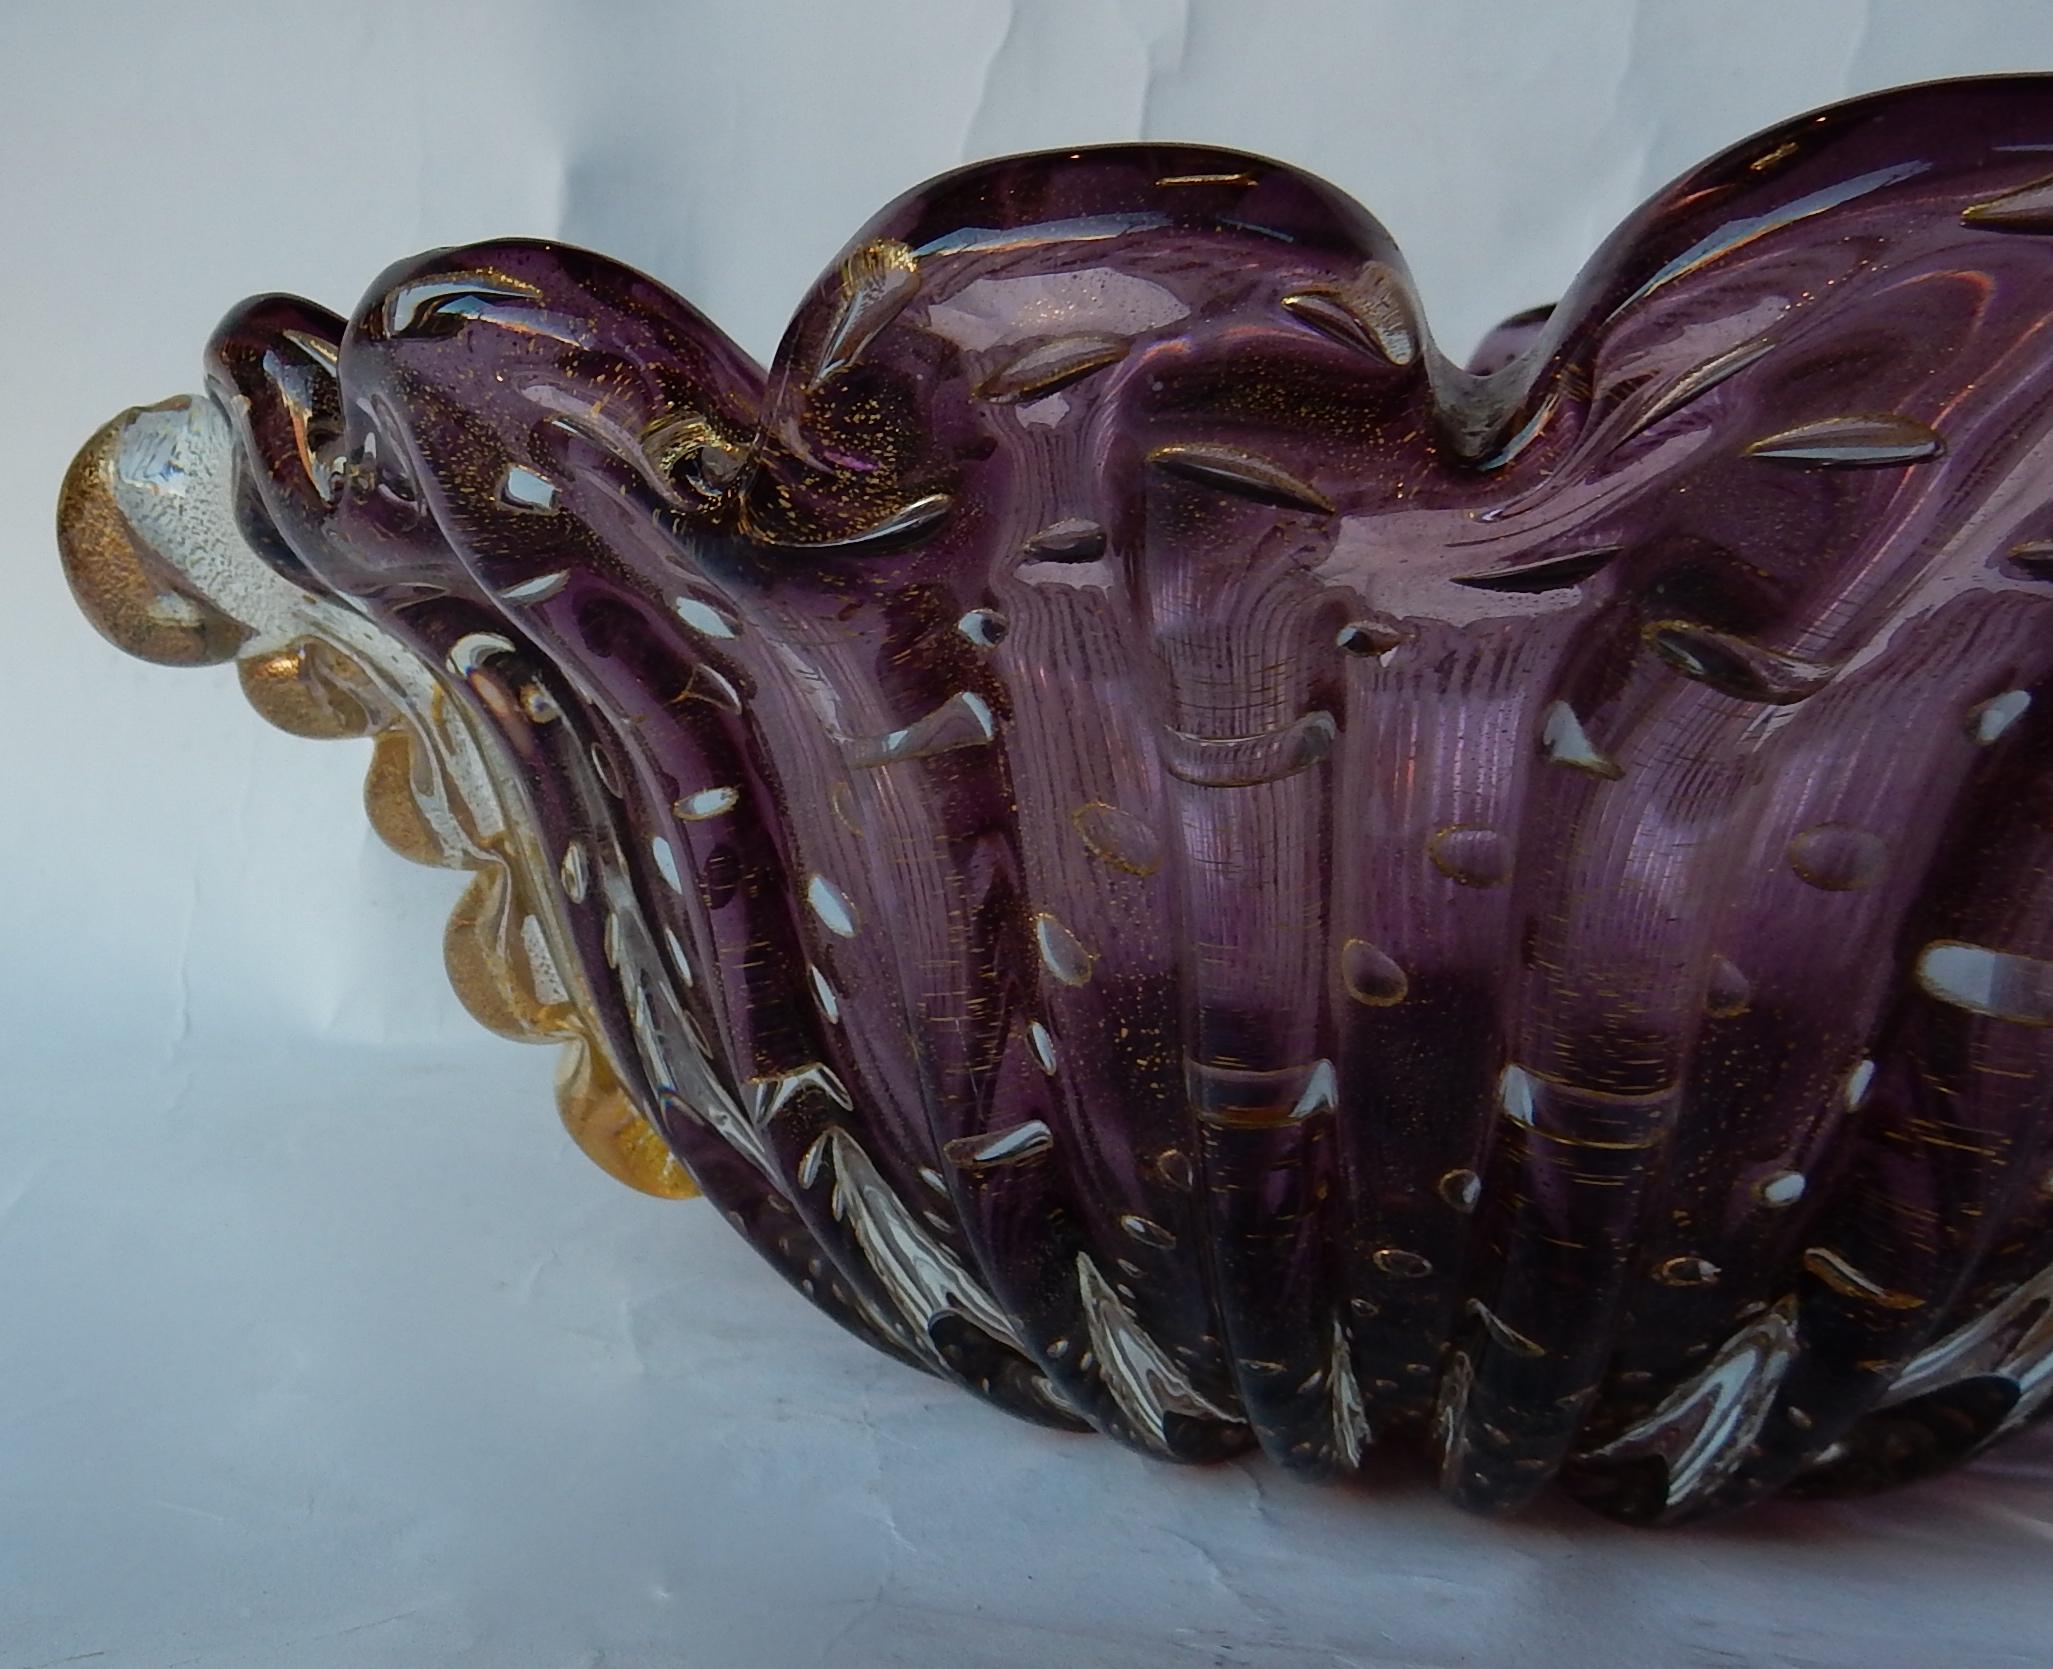 Cup von Murano mit Blasen und Goldeinschlüsse, guter Zustand, lila Kristall und Gold, signiert Toso,
um 1970

Maße: Länge 34 cm
Breite 32 cm
Höhe 14 cm.